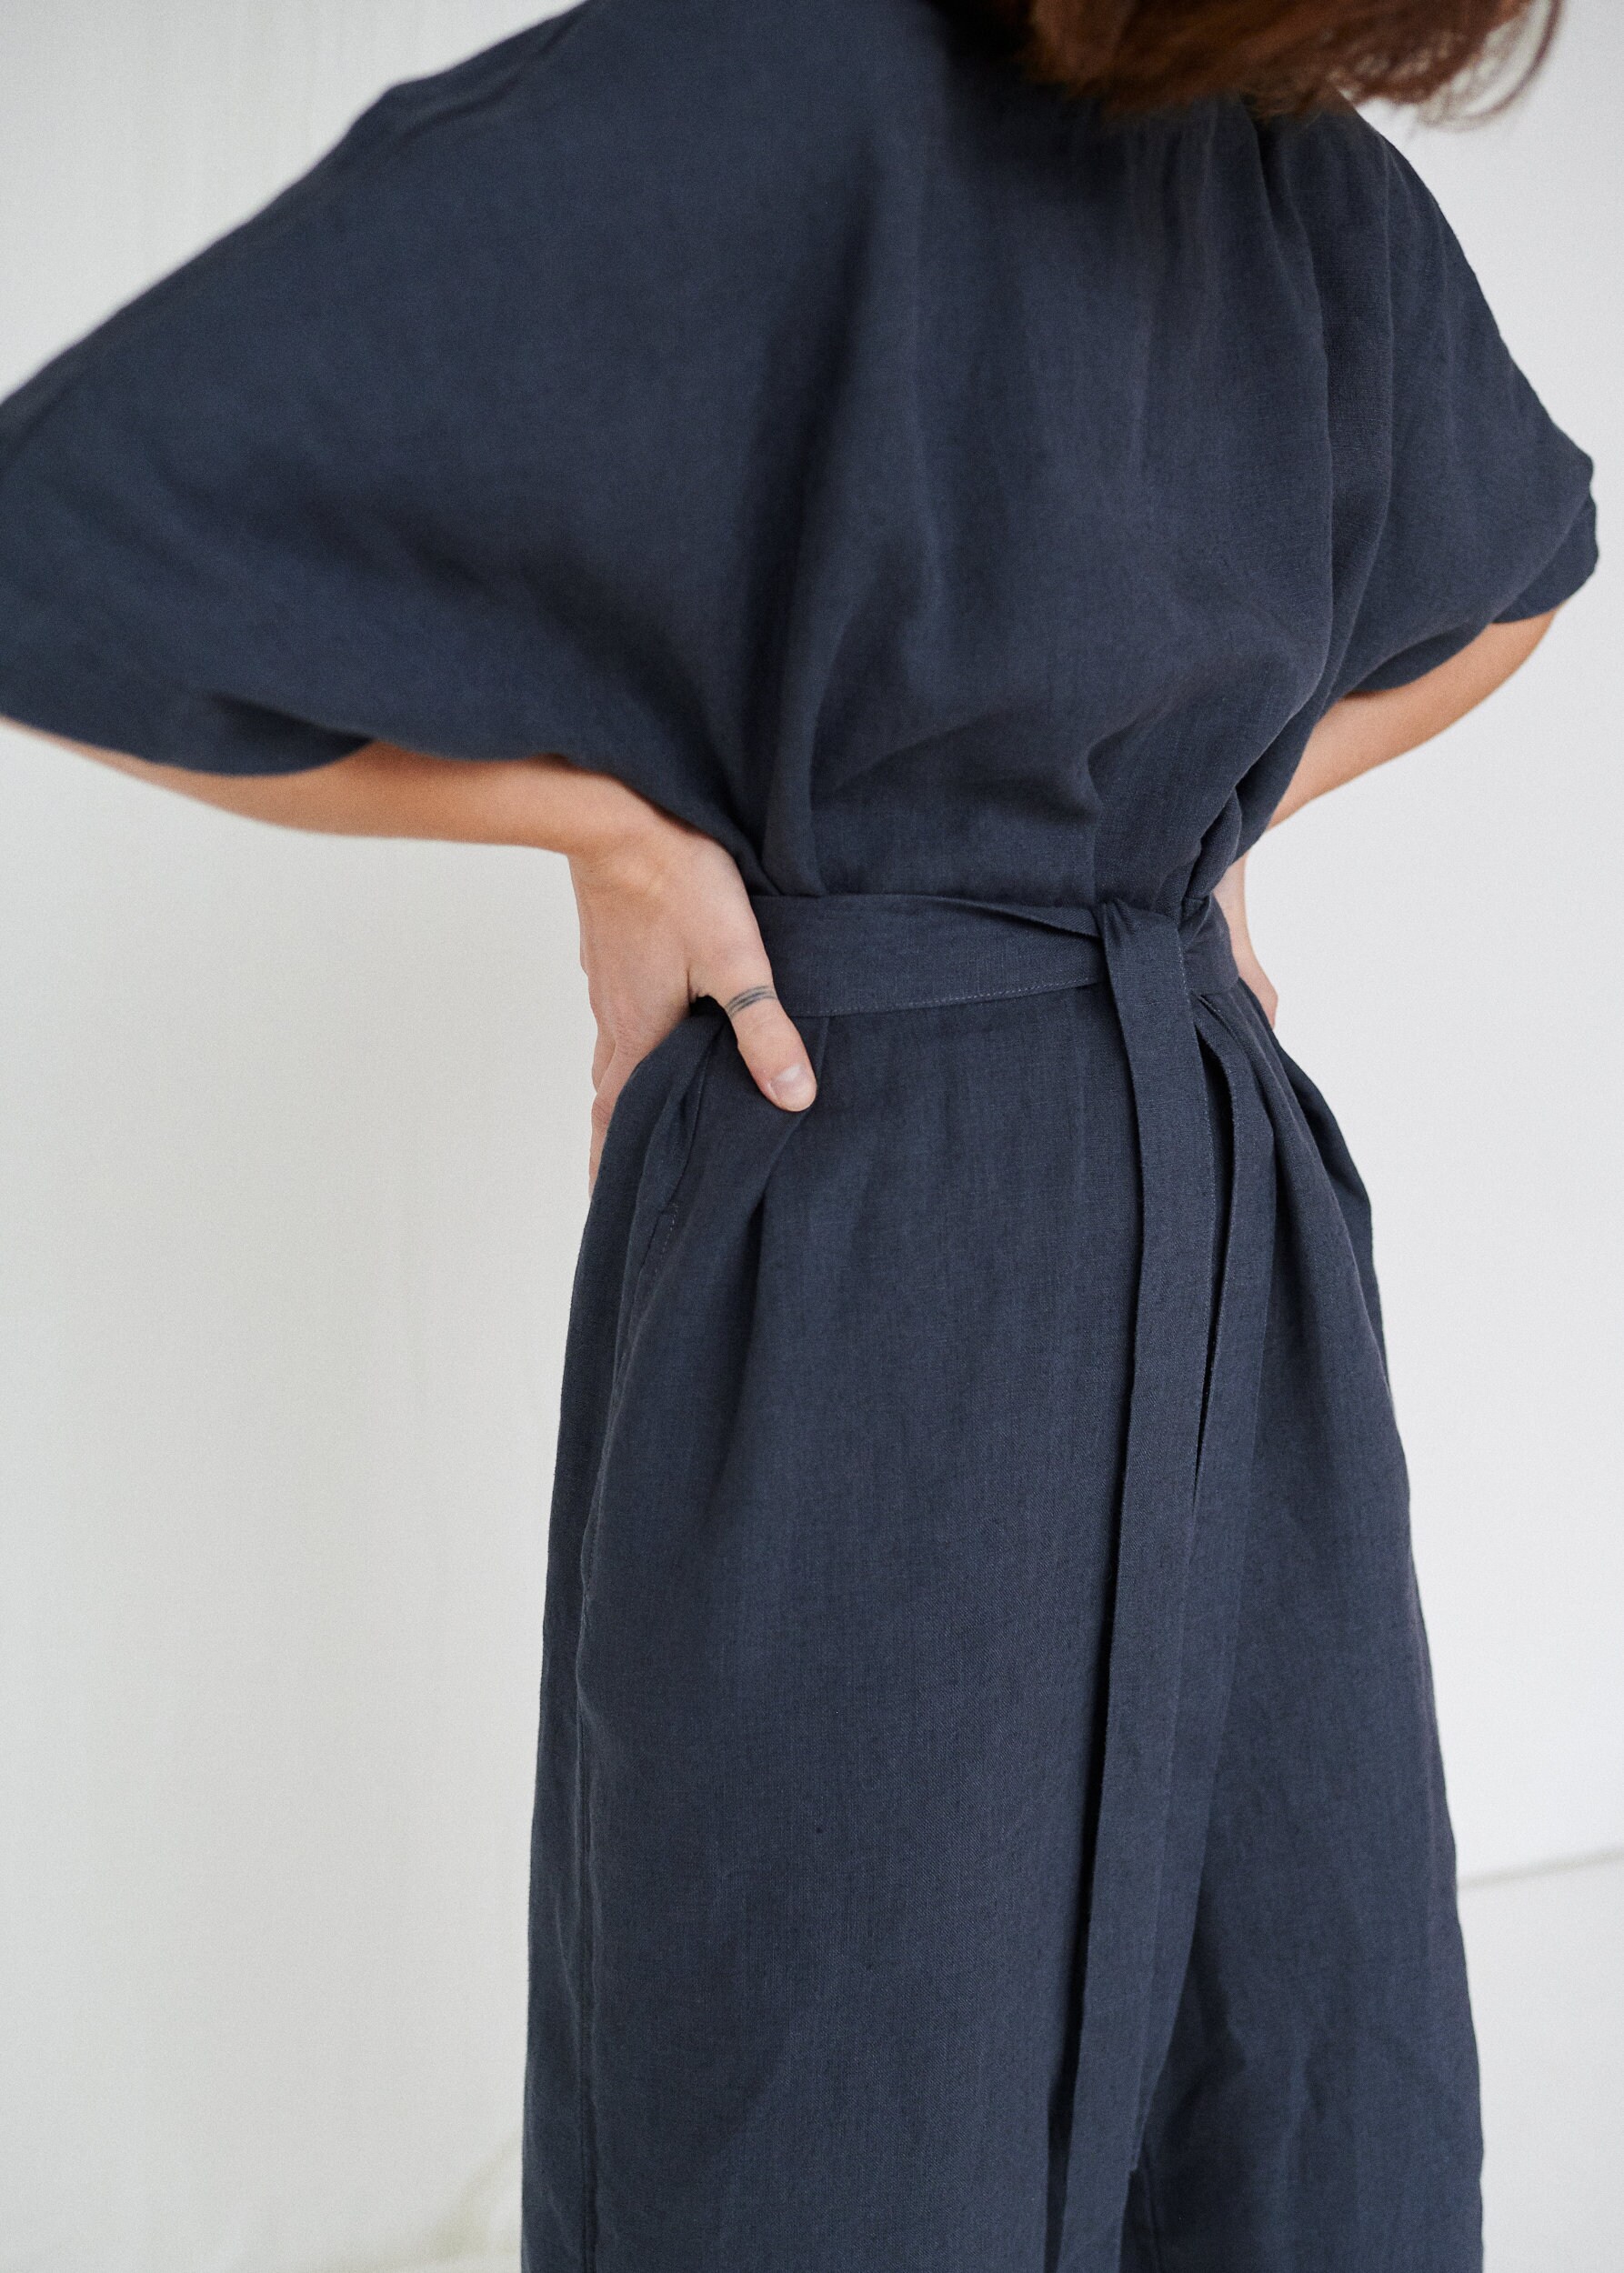 Olivia jumpsuit / Linen jumpsuit/ Oversized jumpsuit/ Summer | Etsy